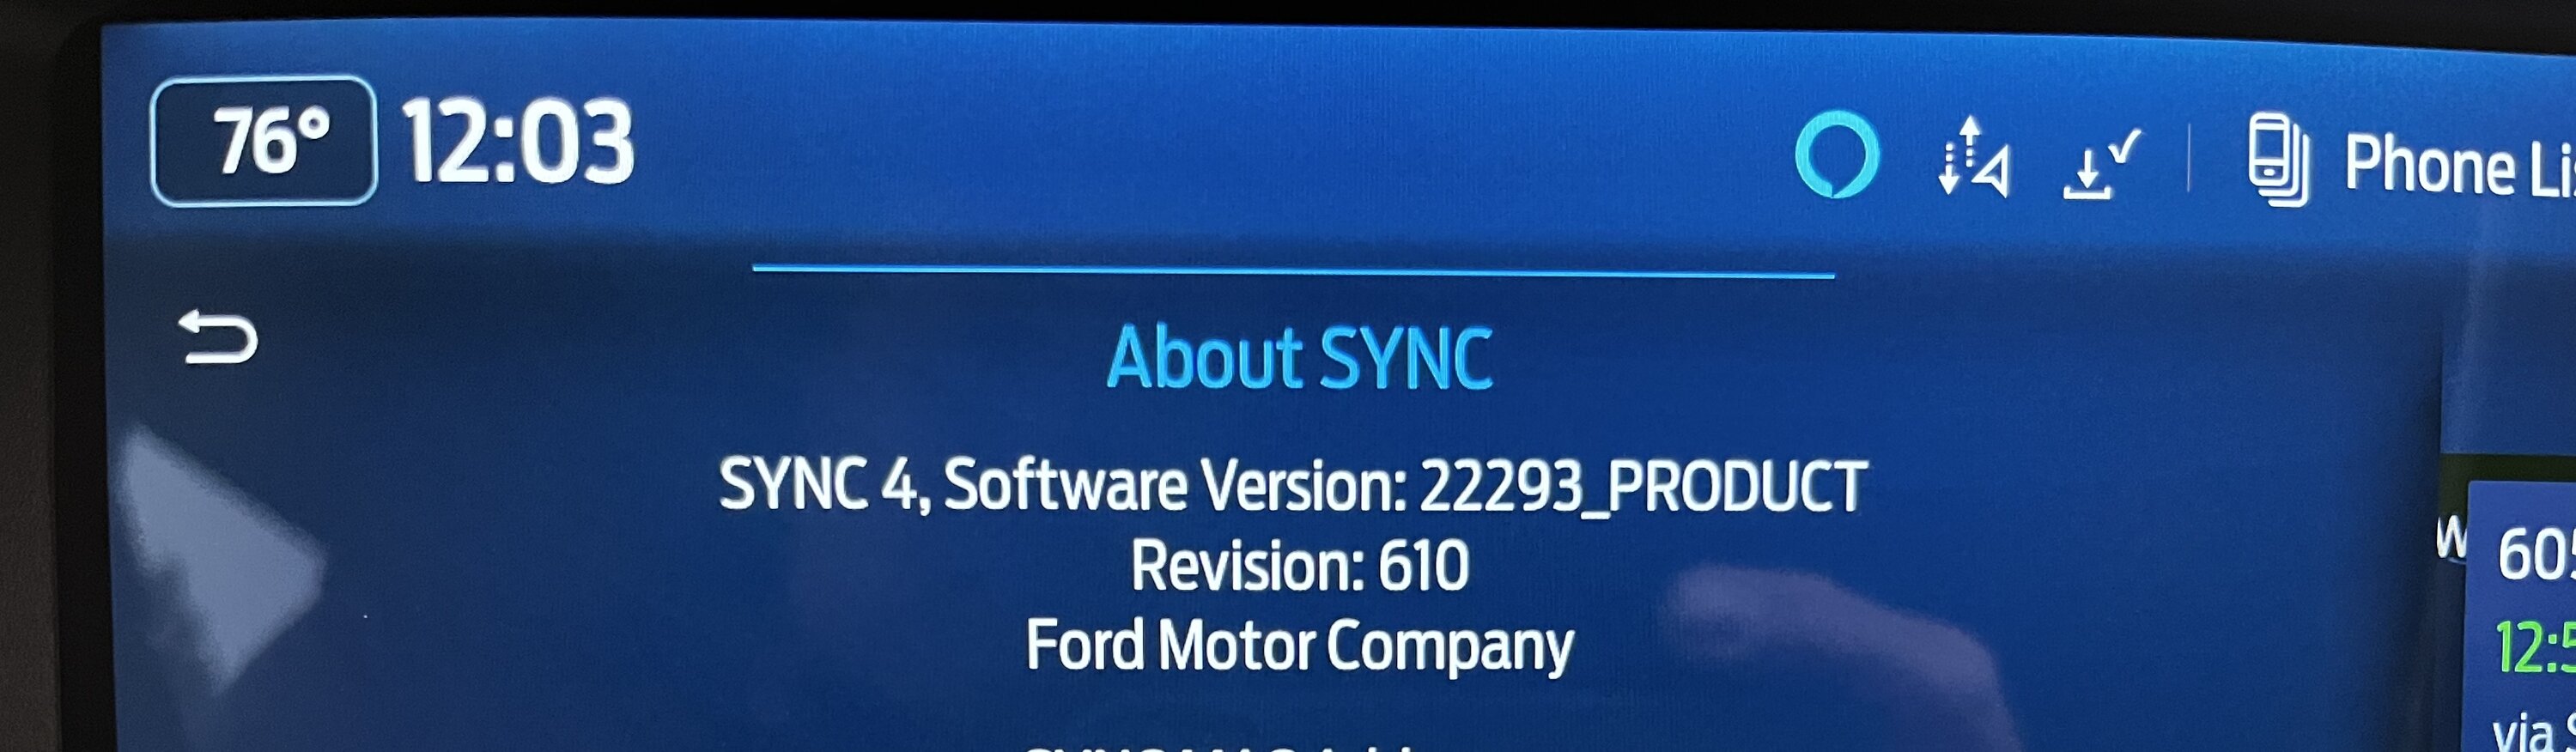 Ford Bronco Fullscreen Apple CarPlay OTA Update Coming Soon! - Per Ford (Mike Levine) 393D0449-F923-4608-88F2-A48DAE829141